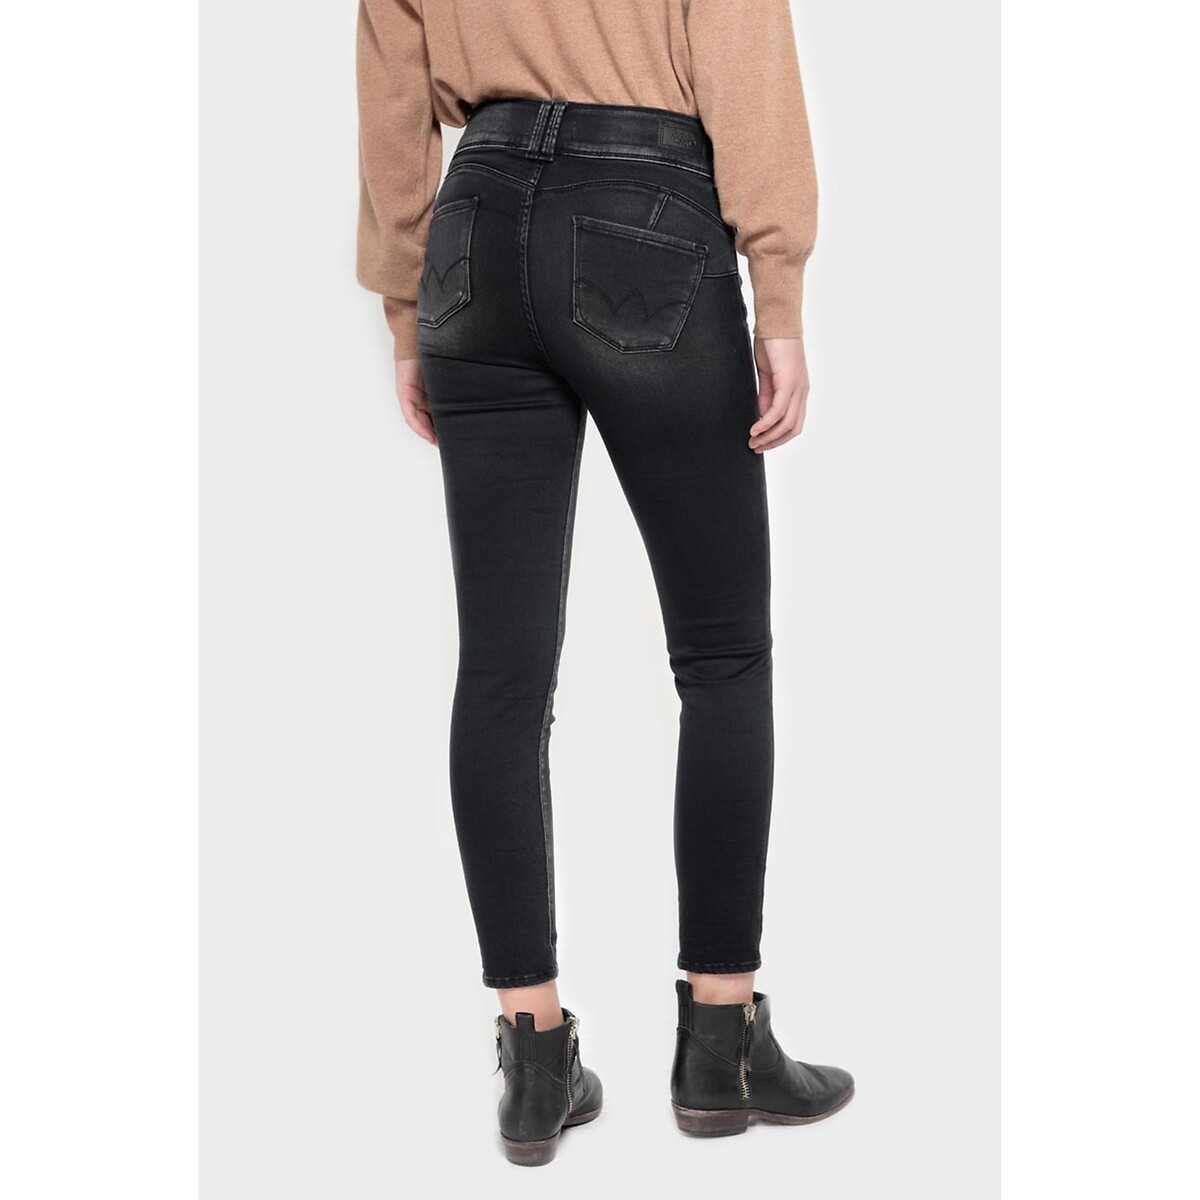 Slim jeans met hoge taille in de sale-le temps des cerises 1